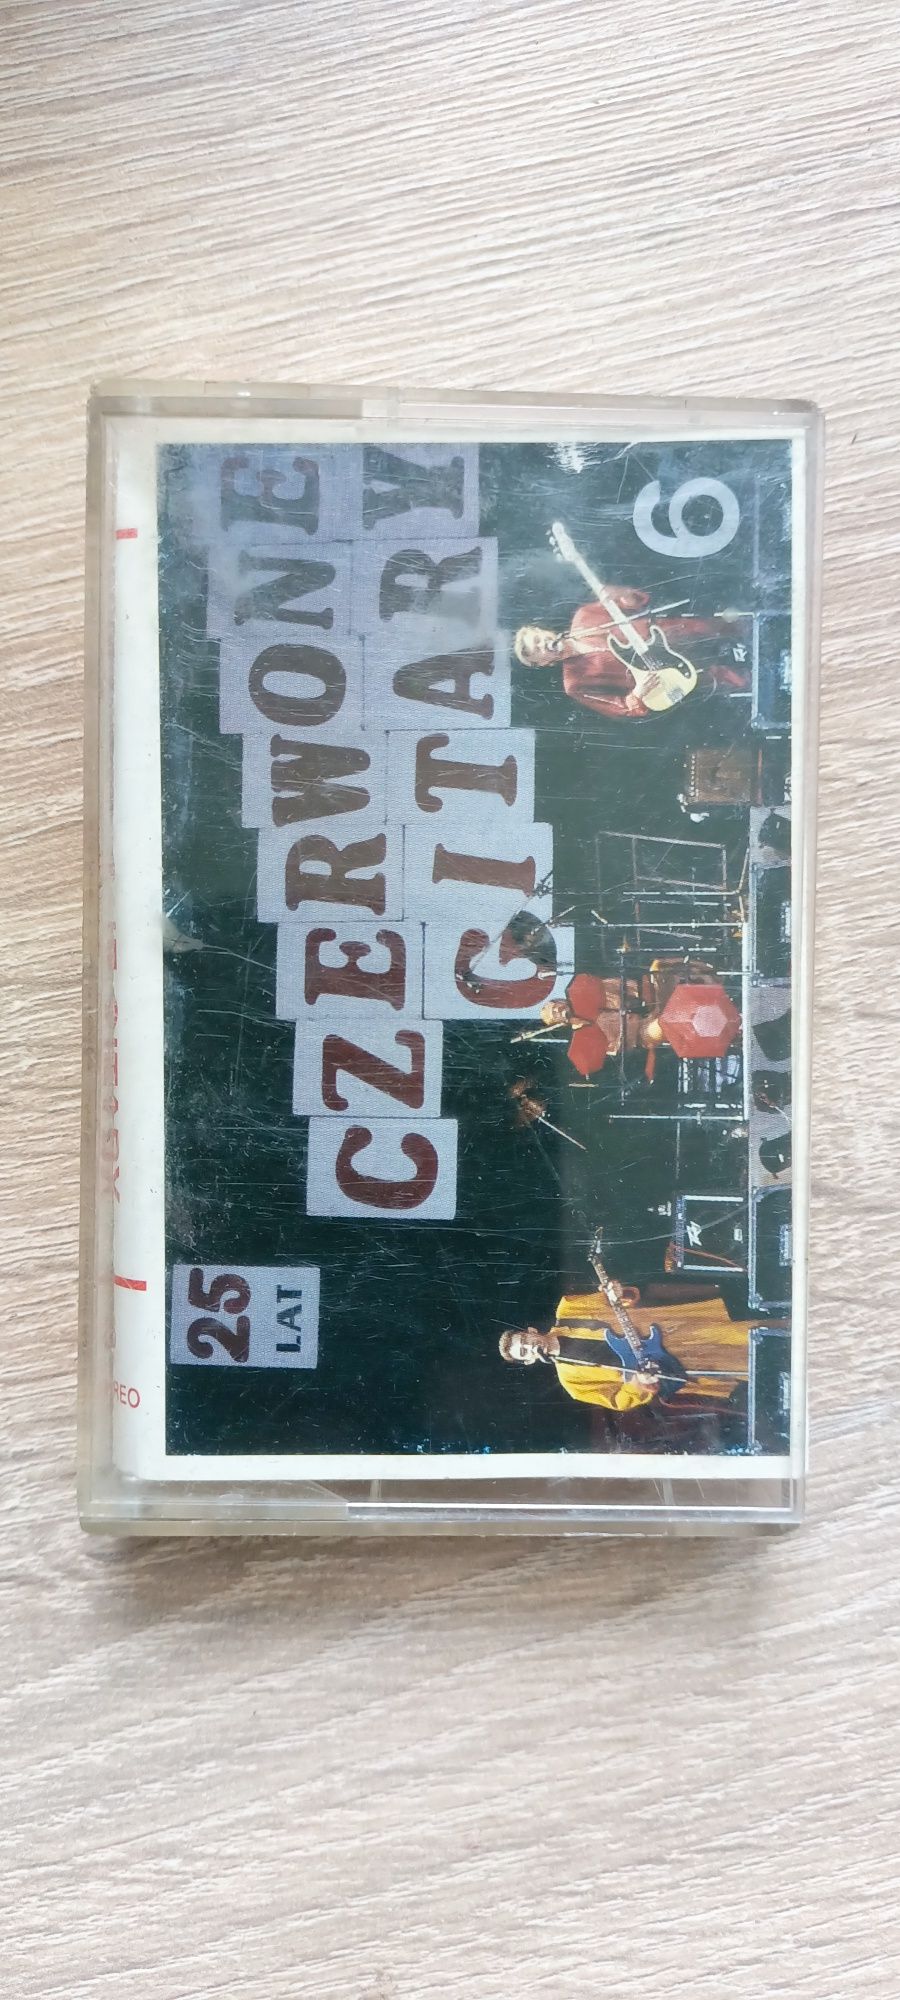 Okładka kasety magnetofonowej Czerwone Gitary 25 lat